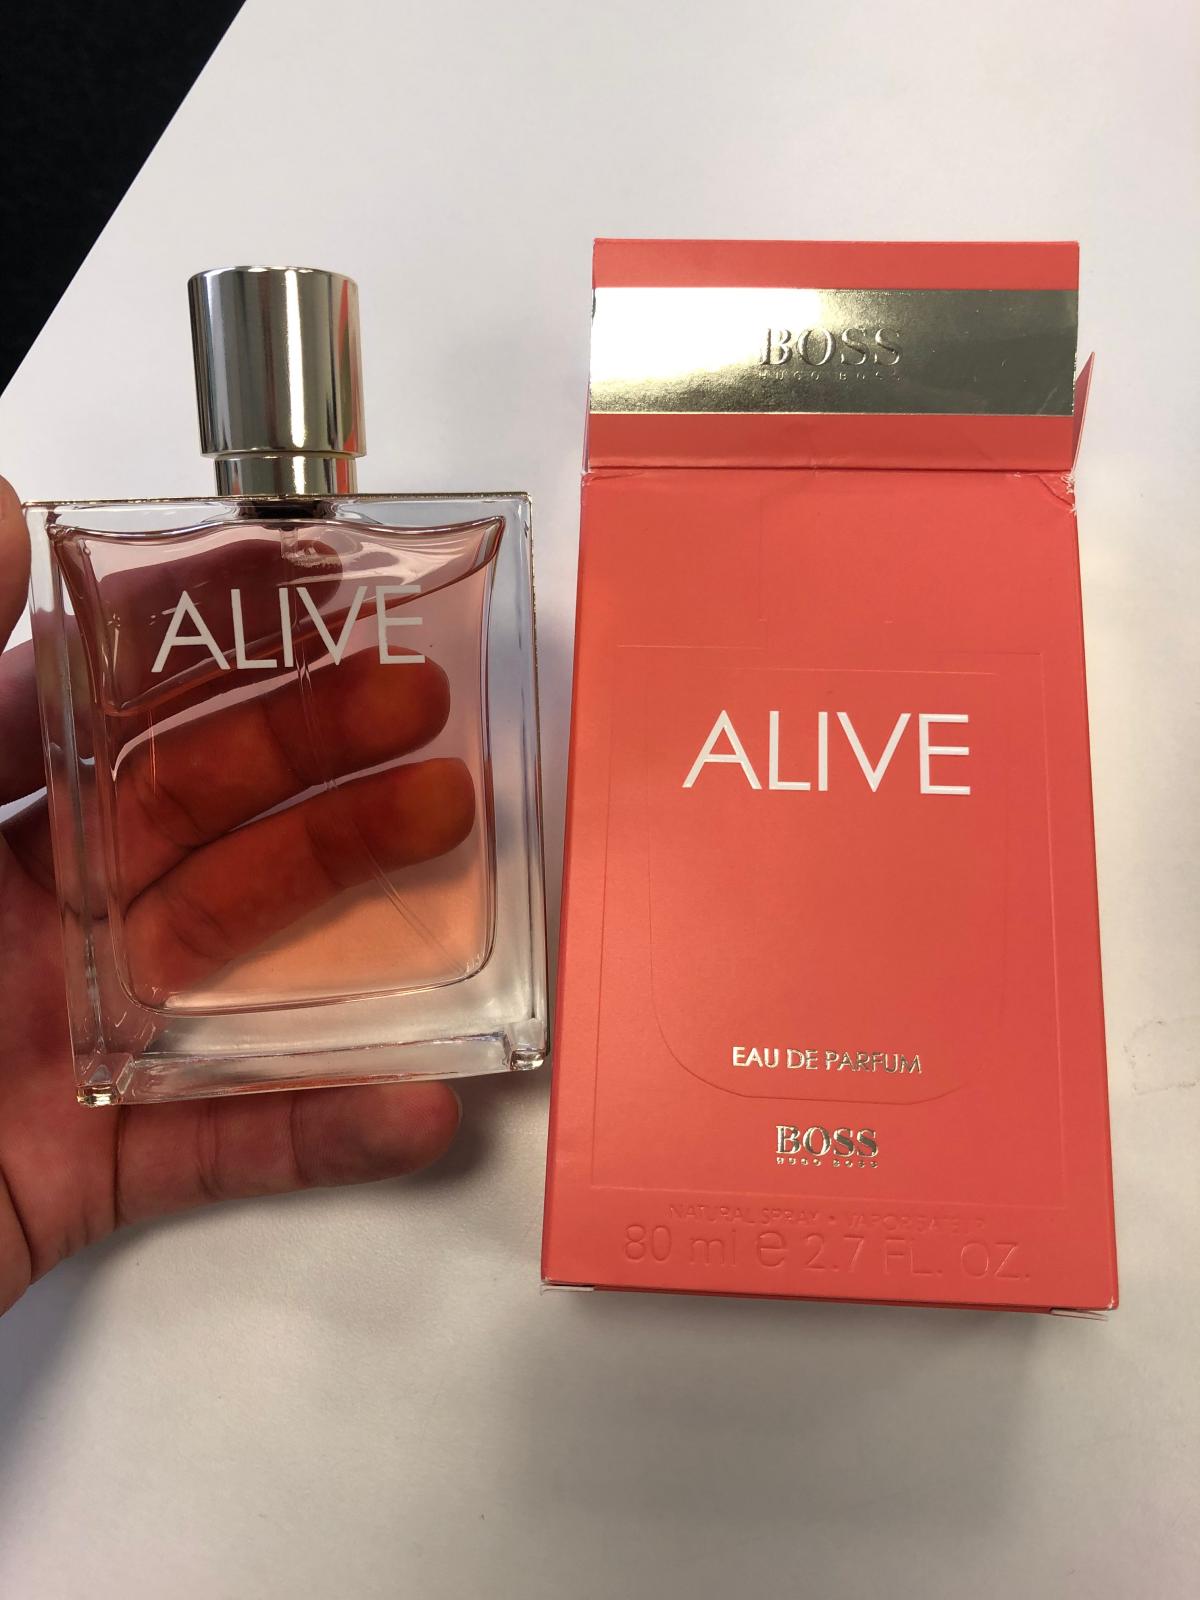 Boss Alive Hugo Boss perfume - a new fragrance for women 2020